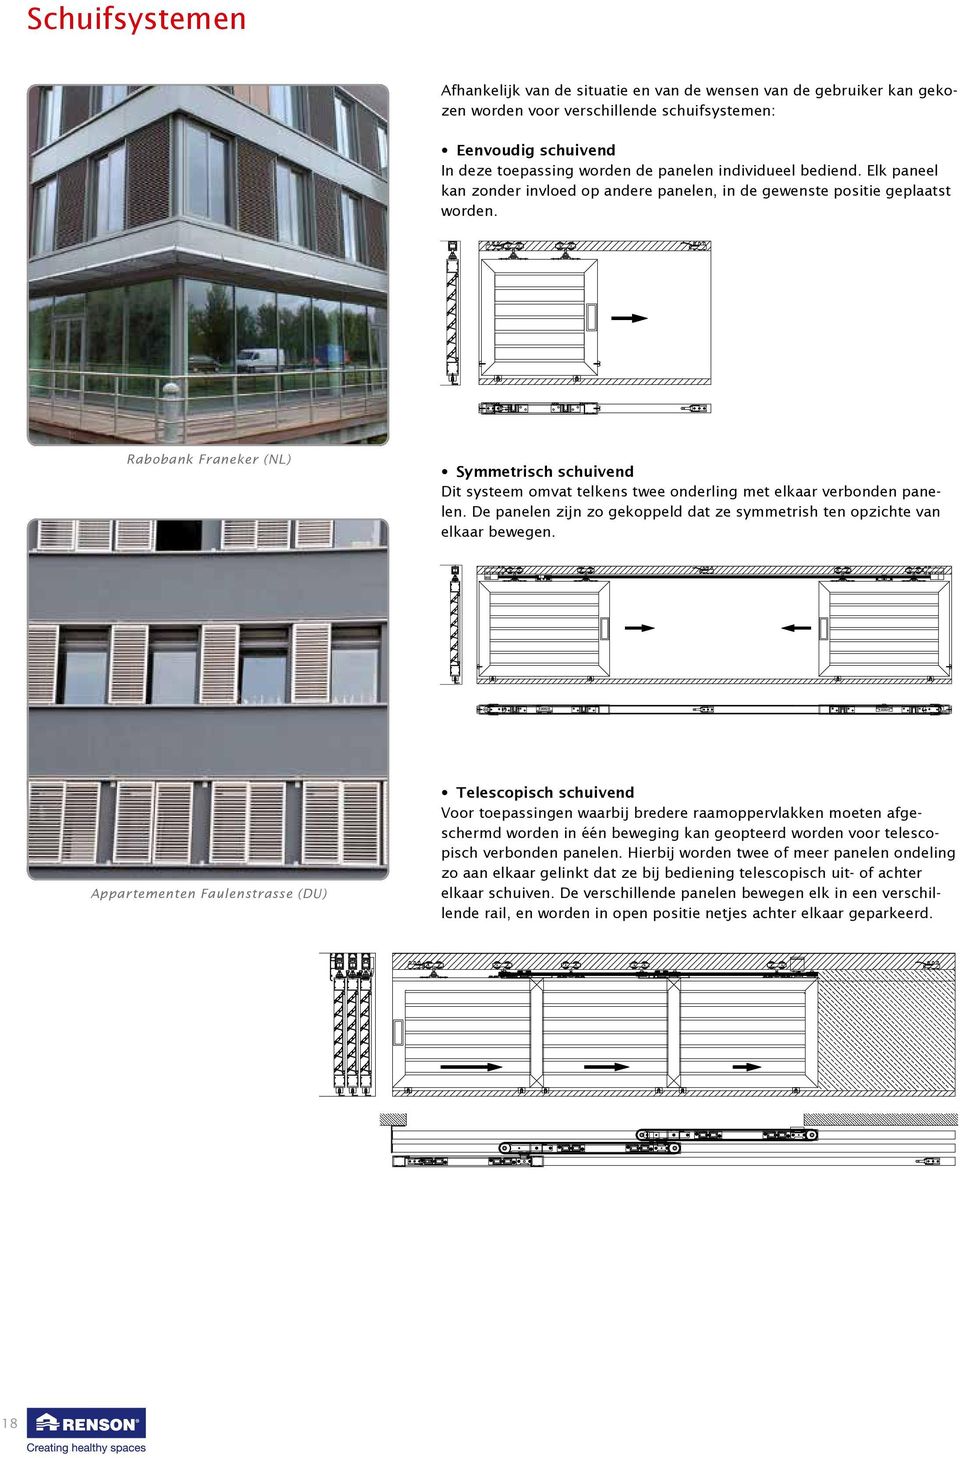 Rabobank Franeker (NL) Appartementen Faulenstrasse (DU) 18 Symmetrisch schuivend Dit systeem omvat telkens twee onderling met elkaar verbonden panelen.